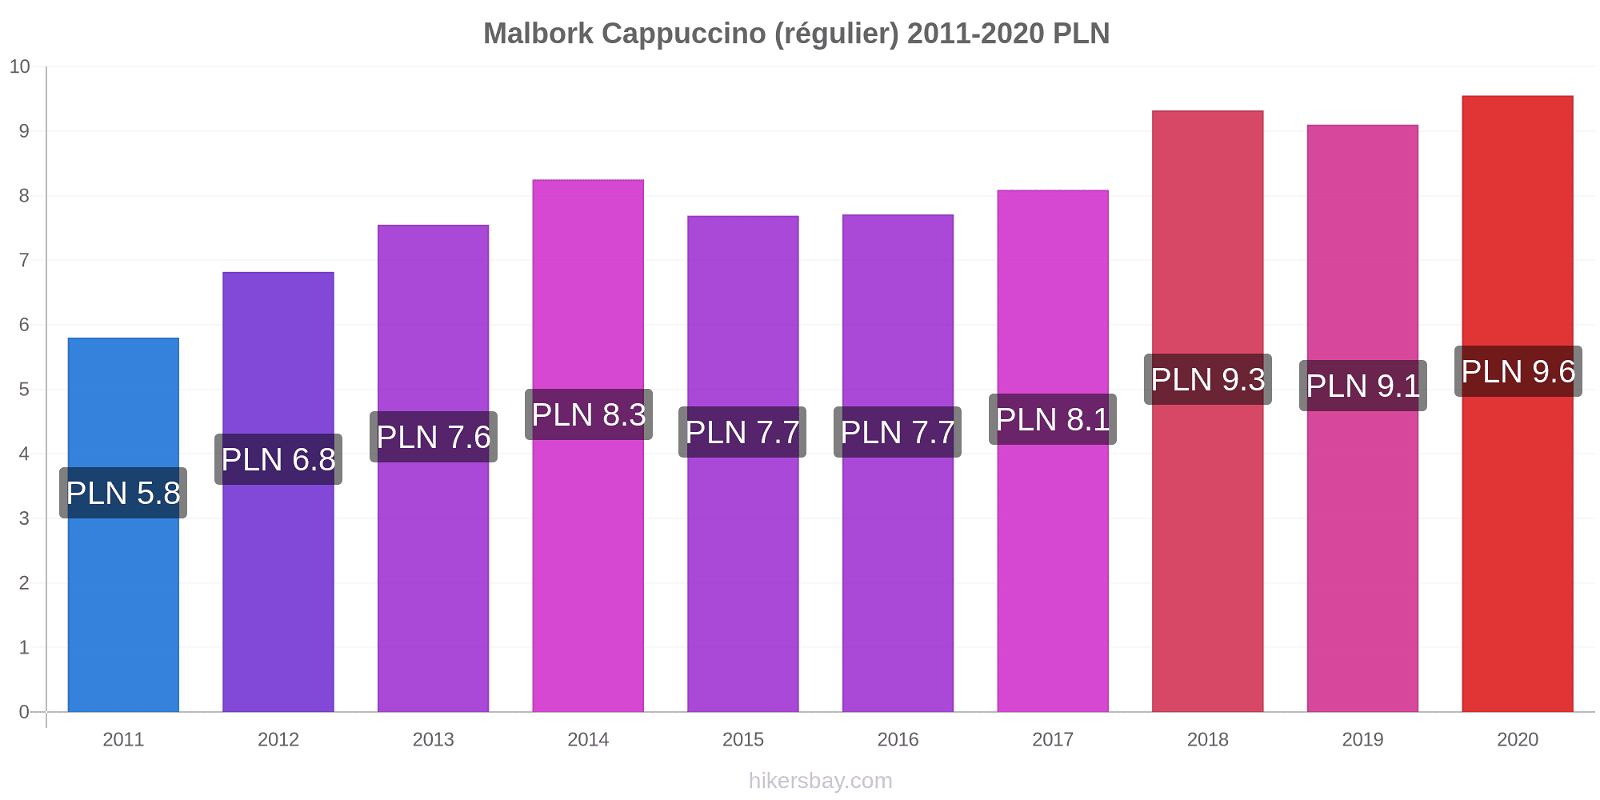 Malbork changements de prix Cappuccino (régulier) hikersbay.com